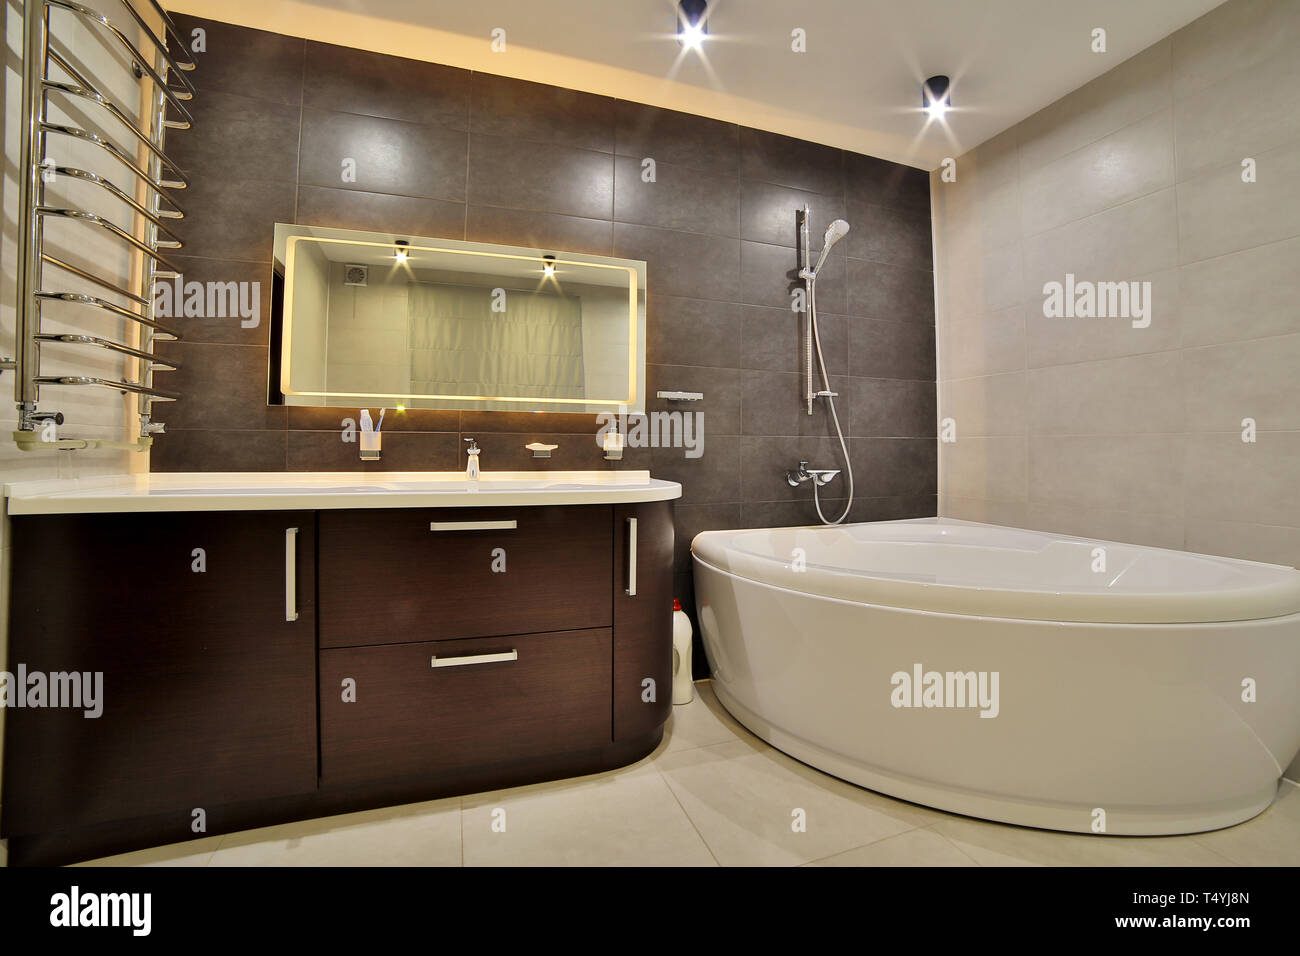 Luxuriöses Badezimmer im französischen Stil in Bad das Haus Stockfotografie  - Alamy